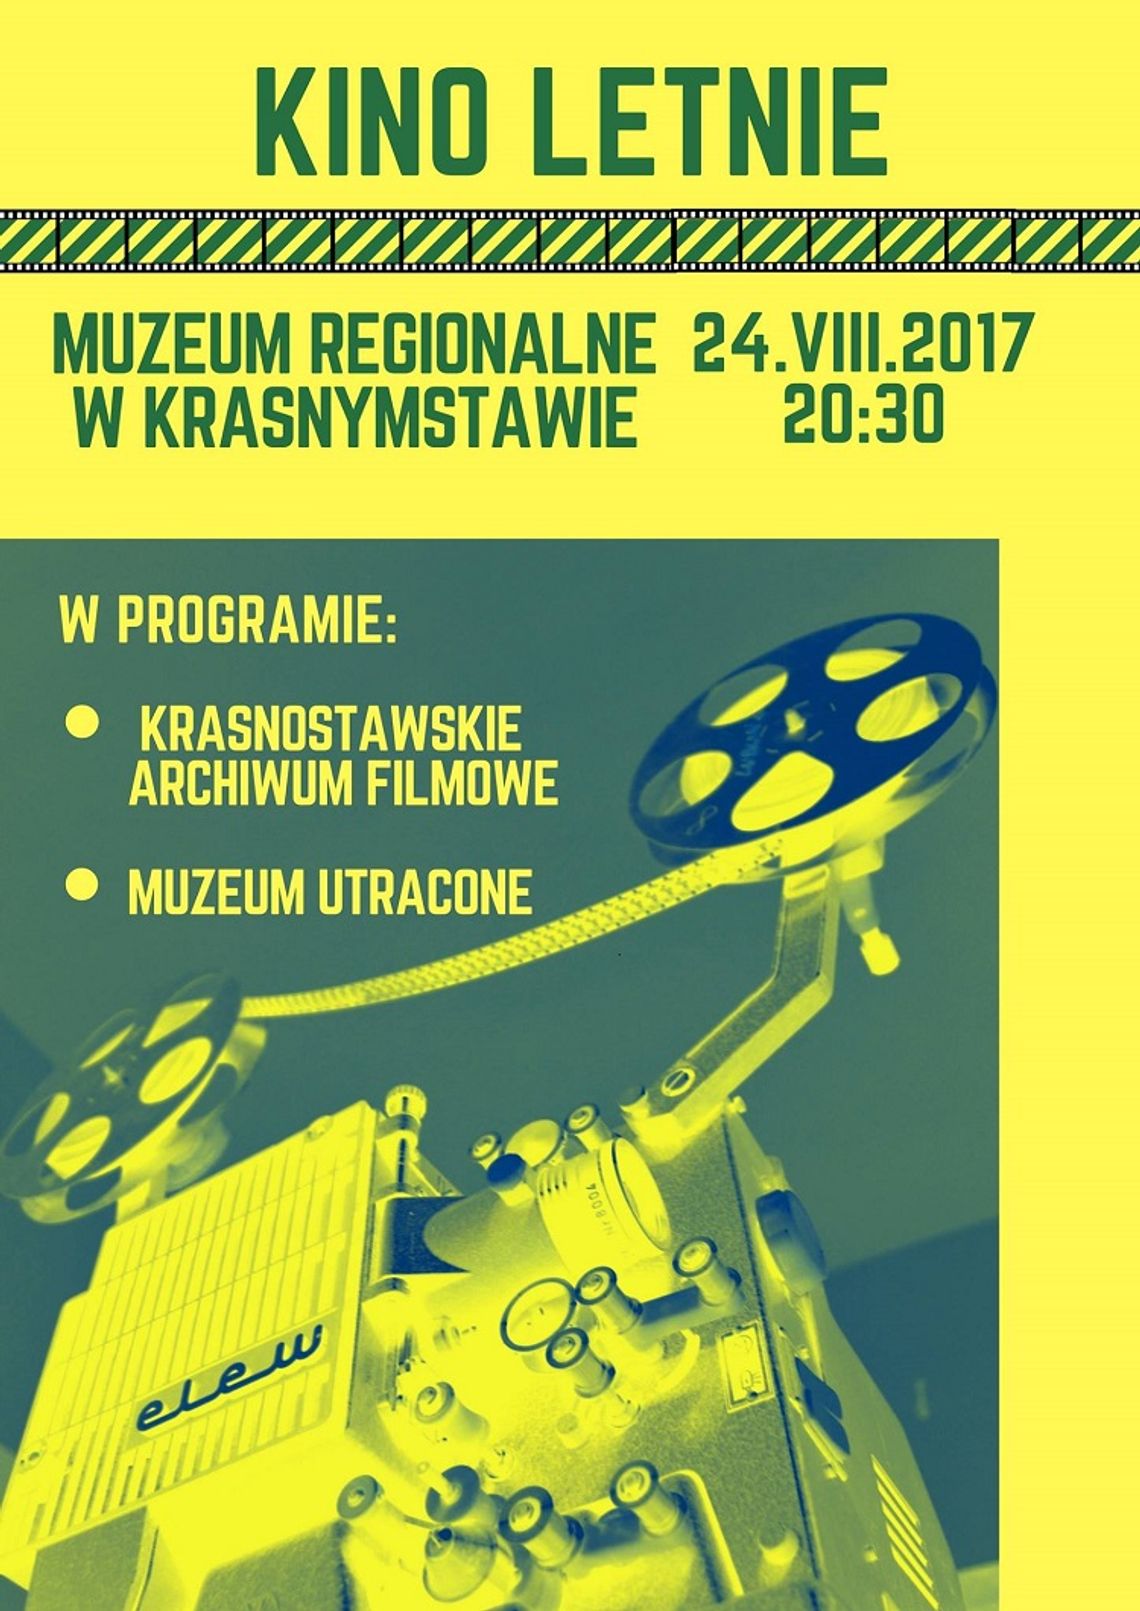 Muzeum Regionalne w Krasnymstawie zaprasza na Kino Letnie.